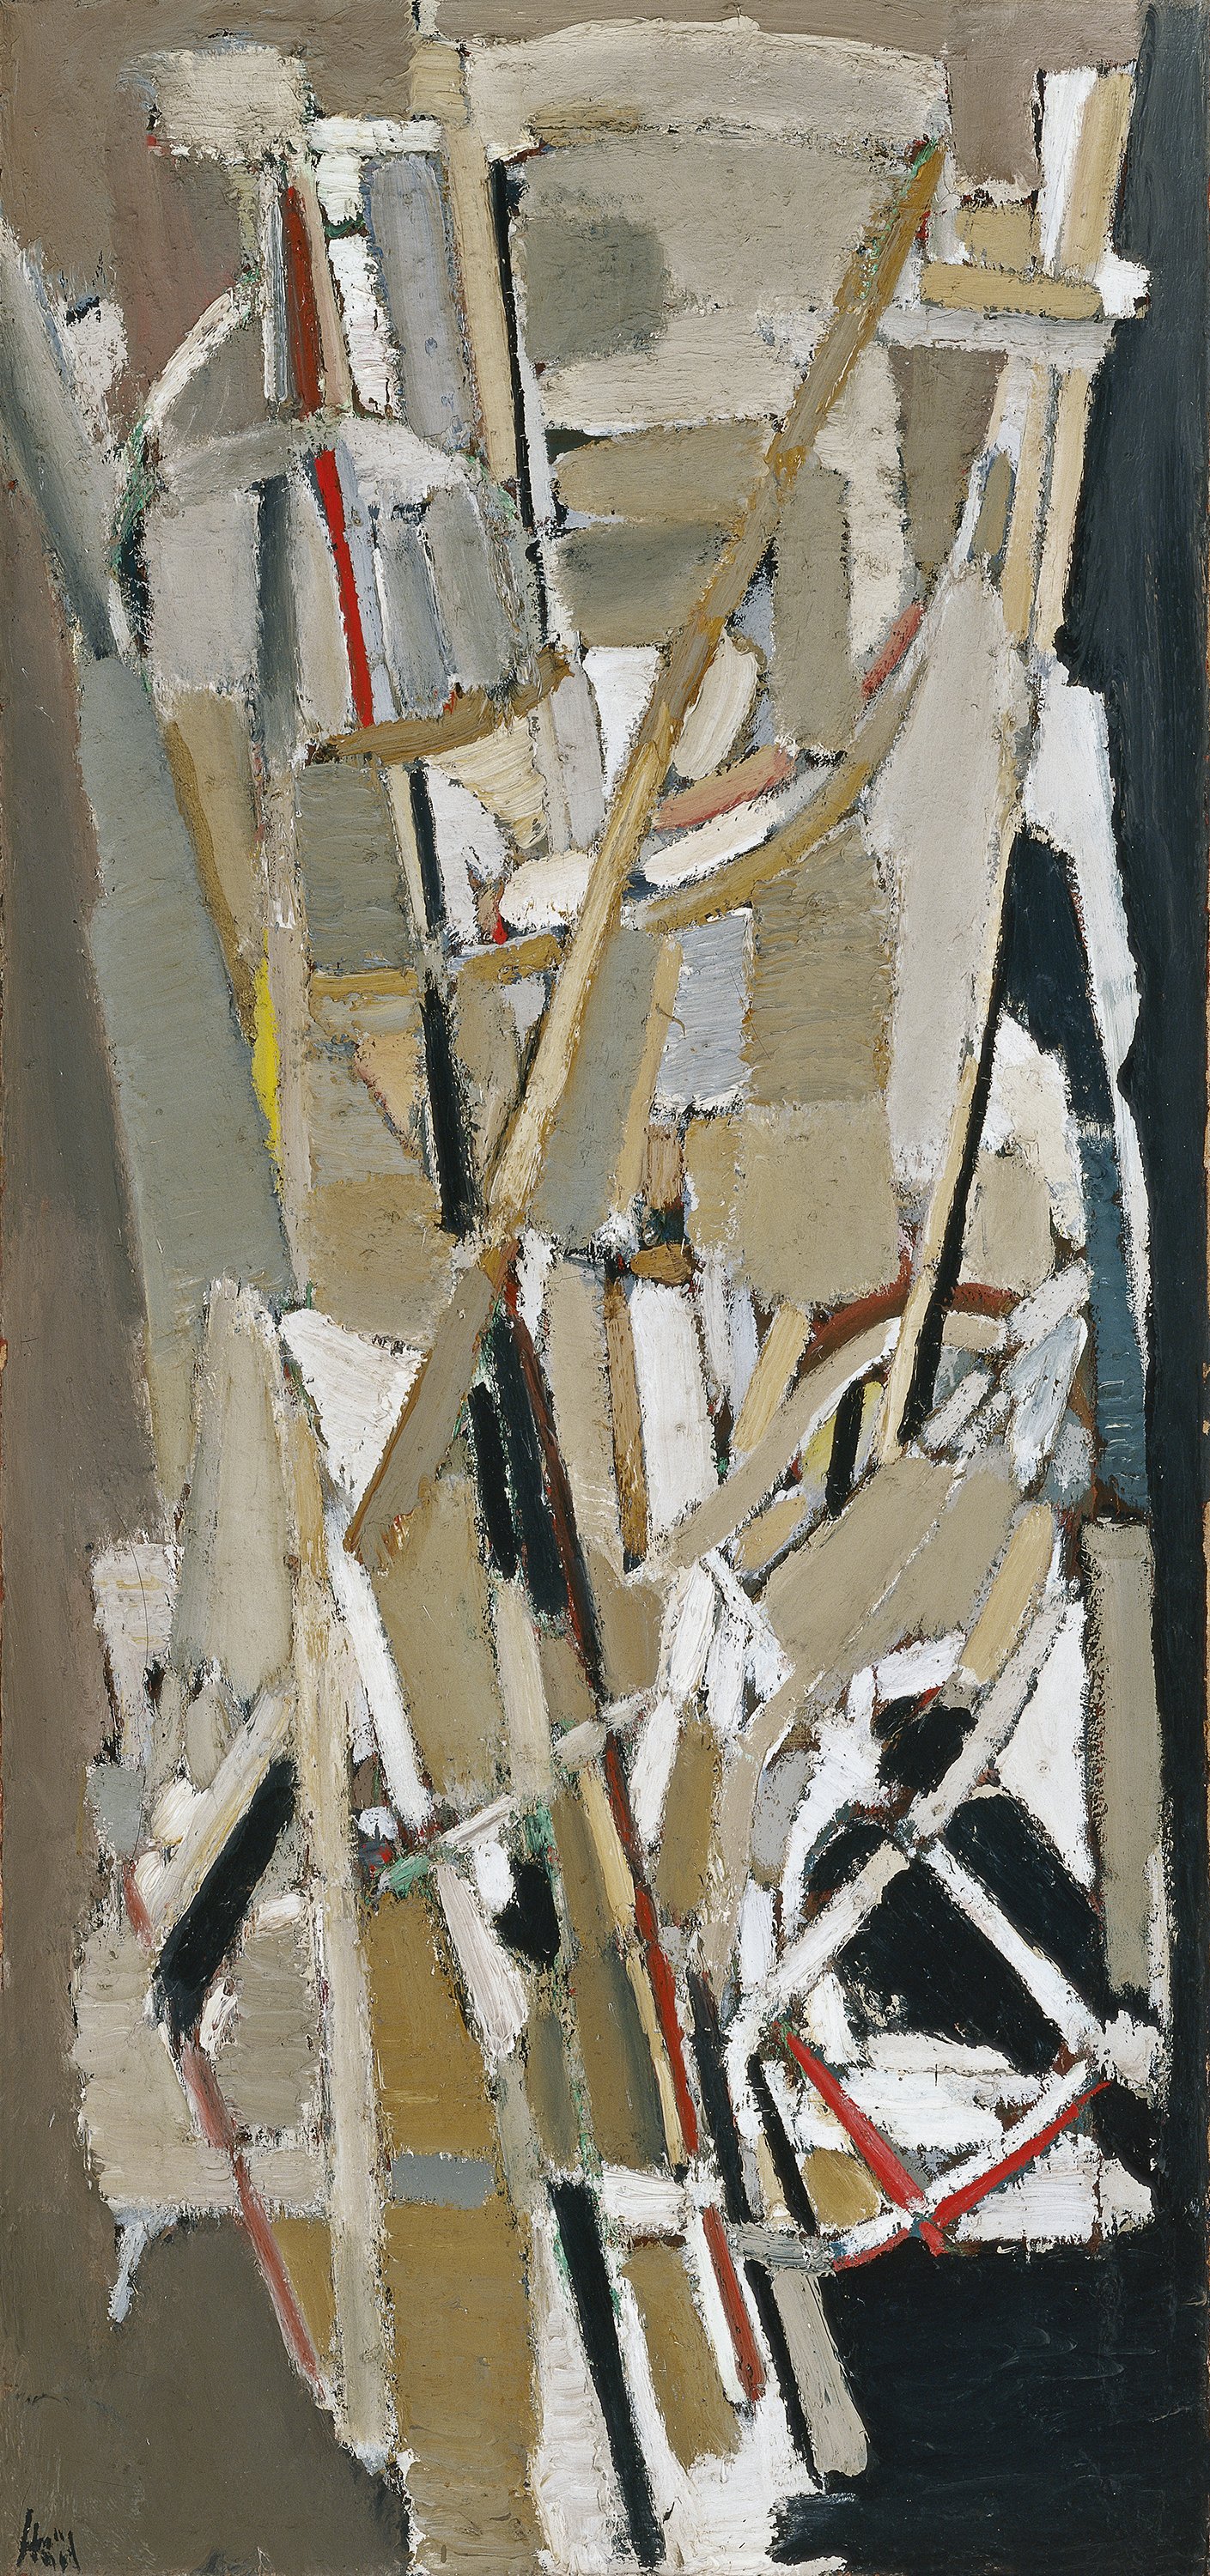 Grey Composition. Composición gris, 1948